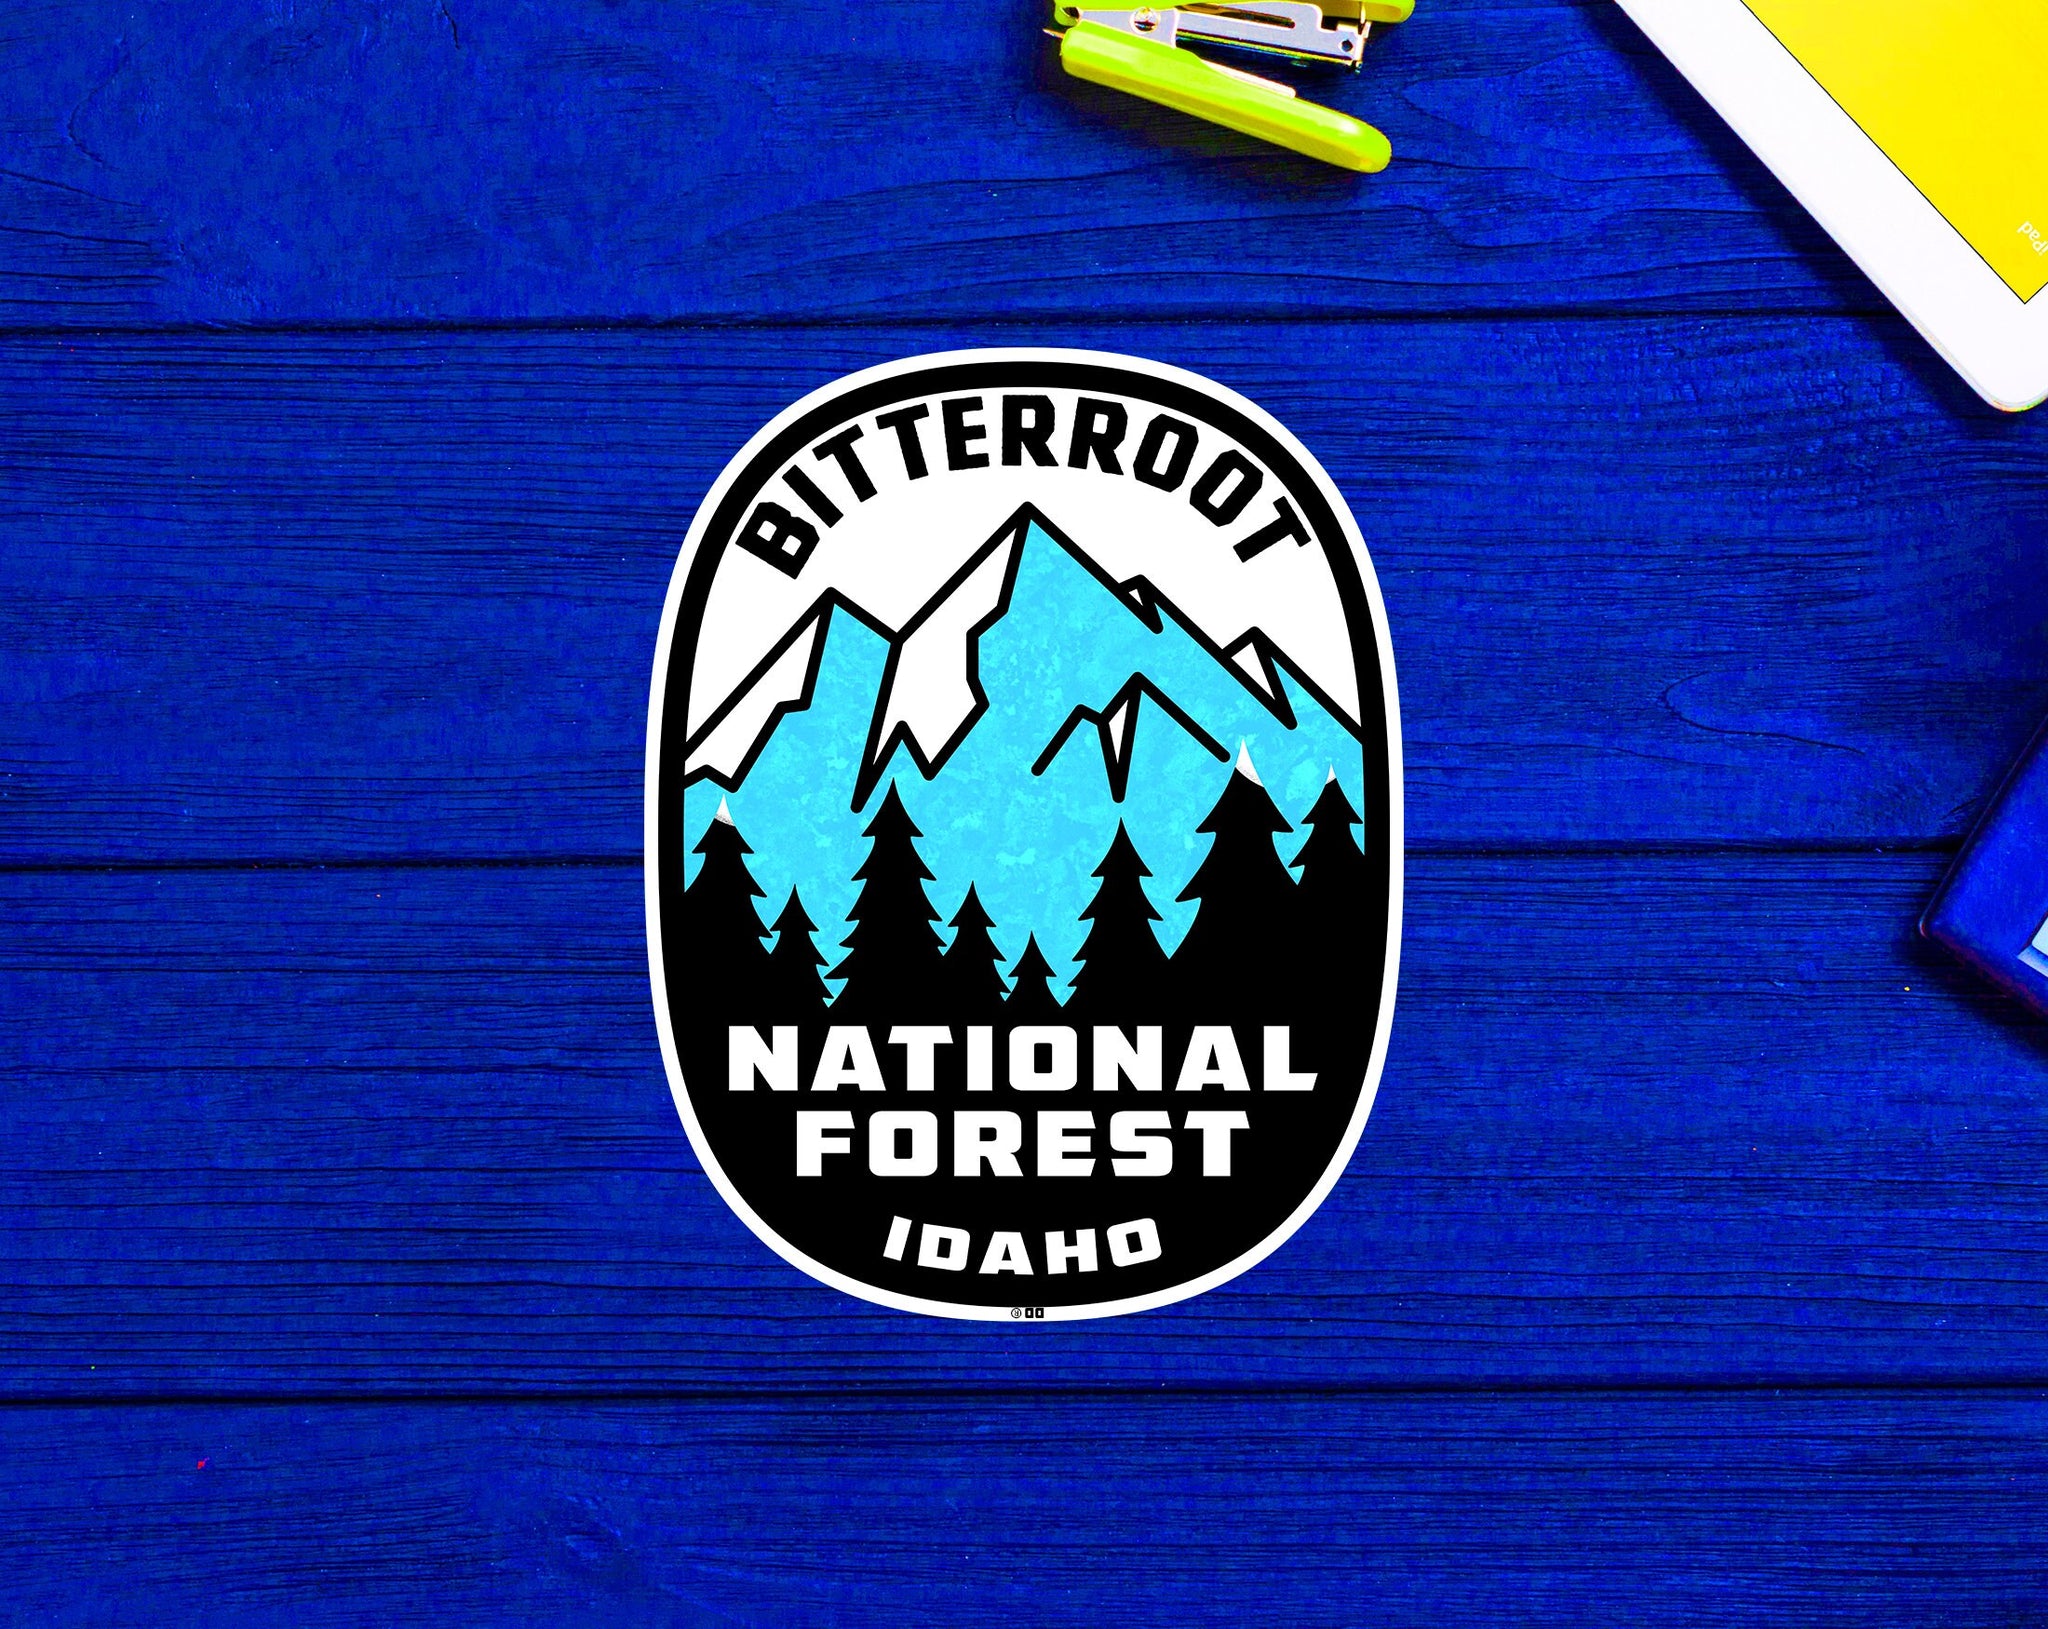 Bitterroot National Forest Idaho Sticker 3.9"